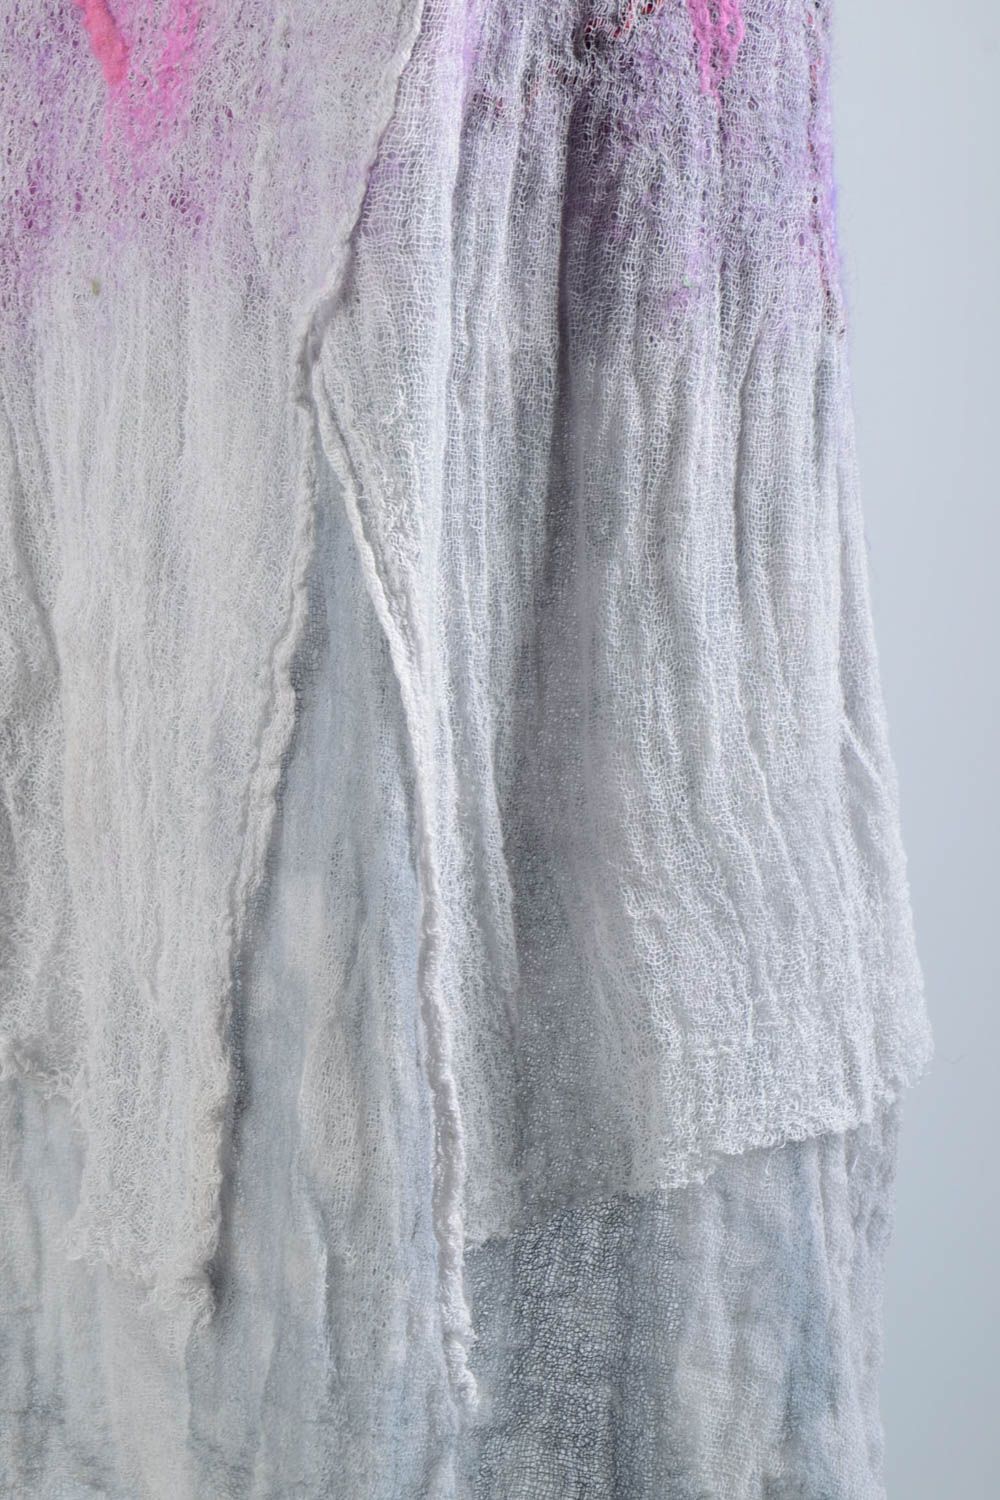 Robe femme fait main Robe laine violette feutrage Vêtement femme de mode photo 5